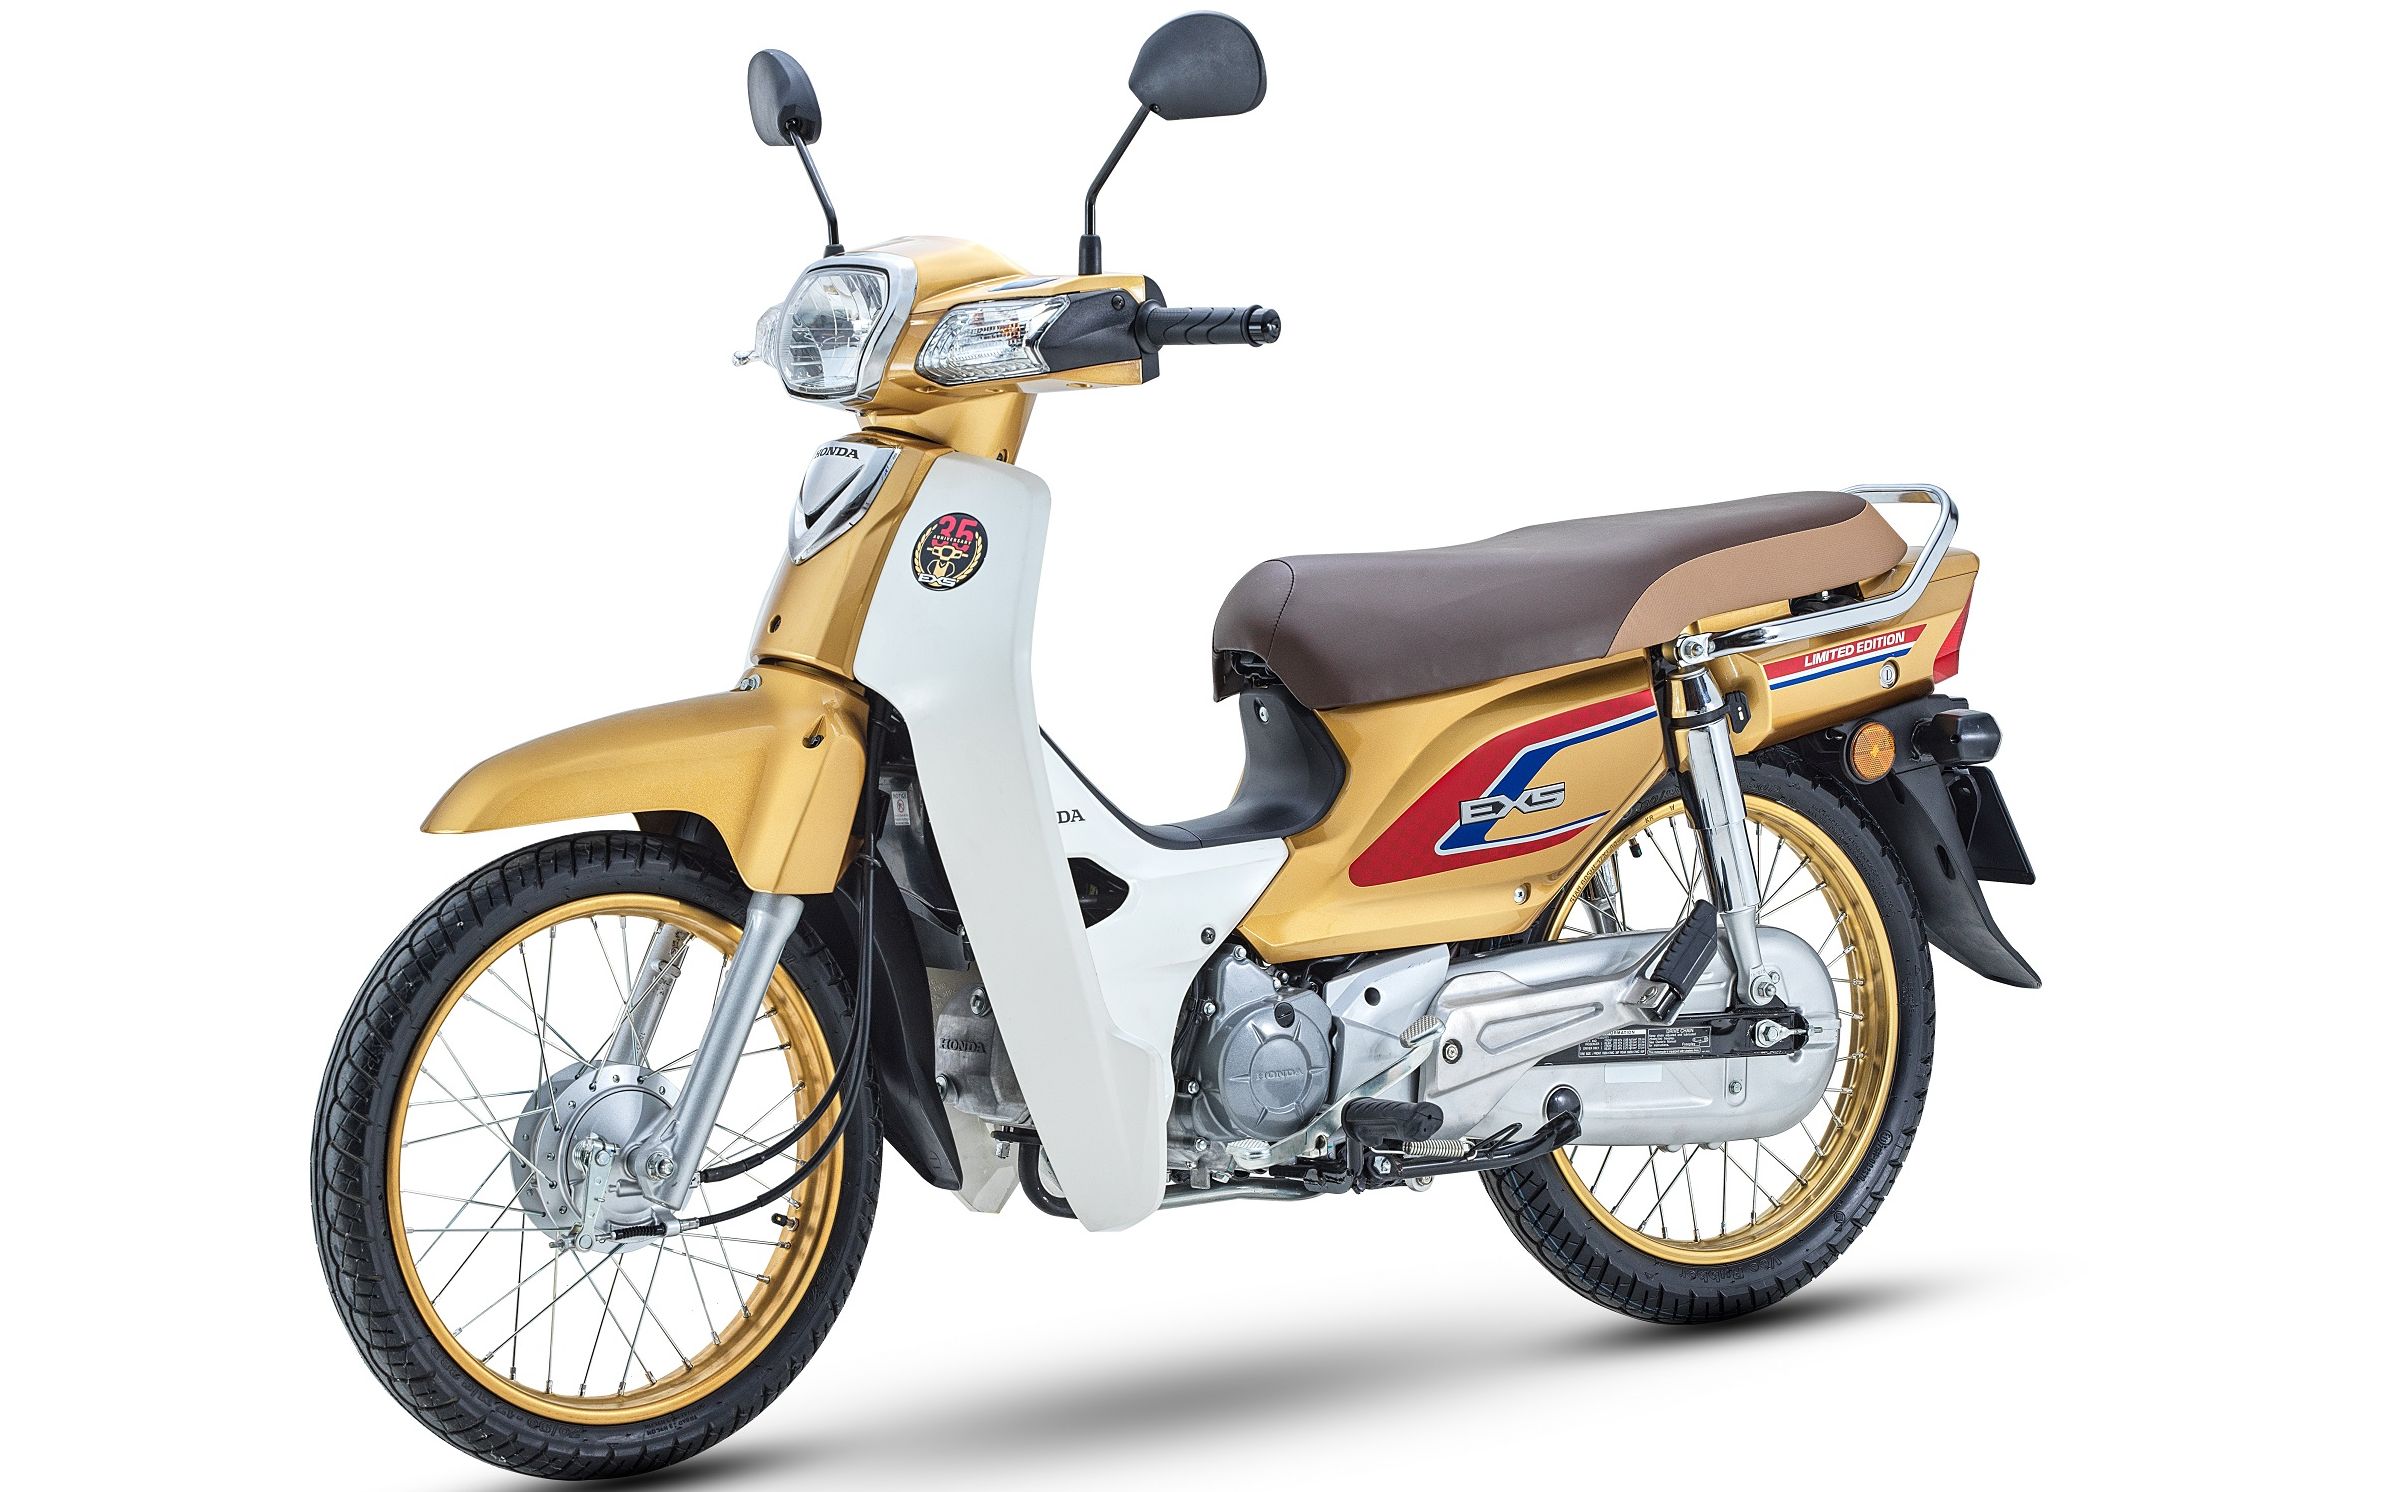 Bảng giá xe máy Honda Việt Nam 062023 mới nhất tại đại lý